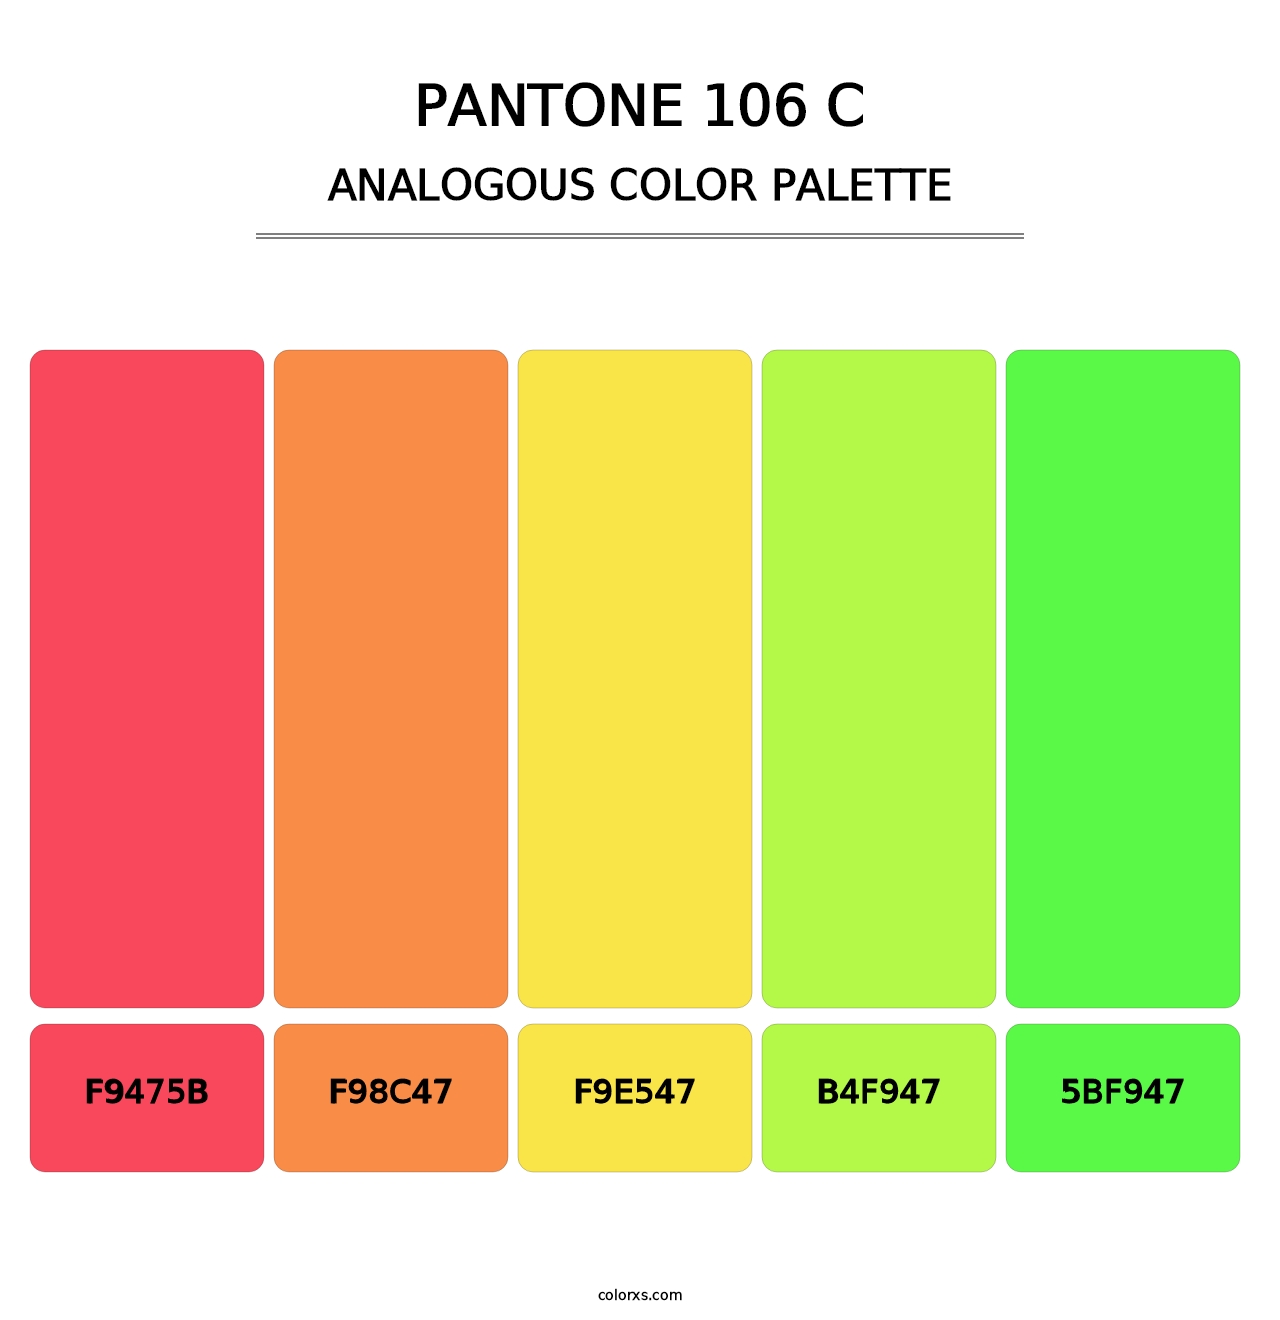 PANTONE 106 C - Analogous Color Palette